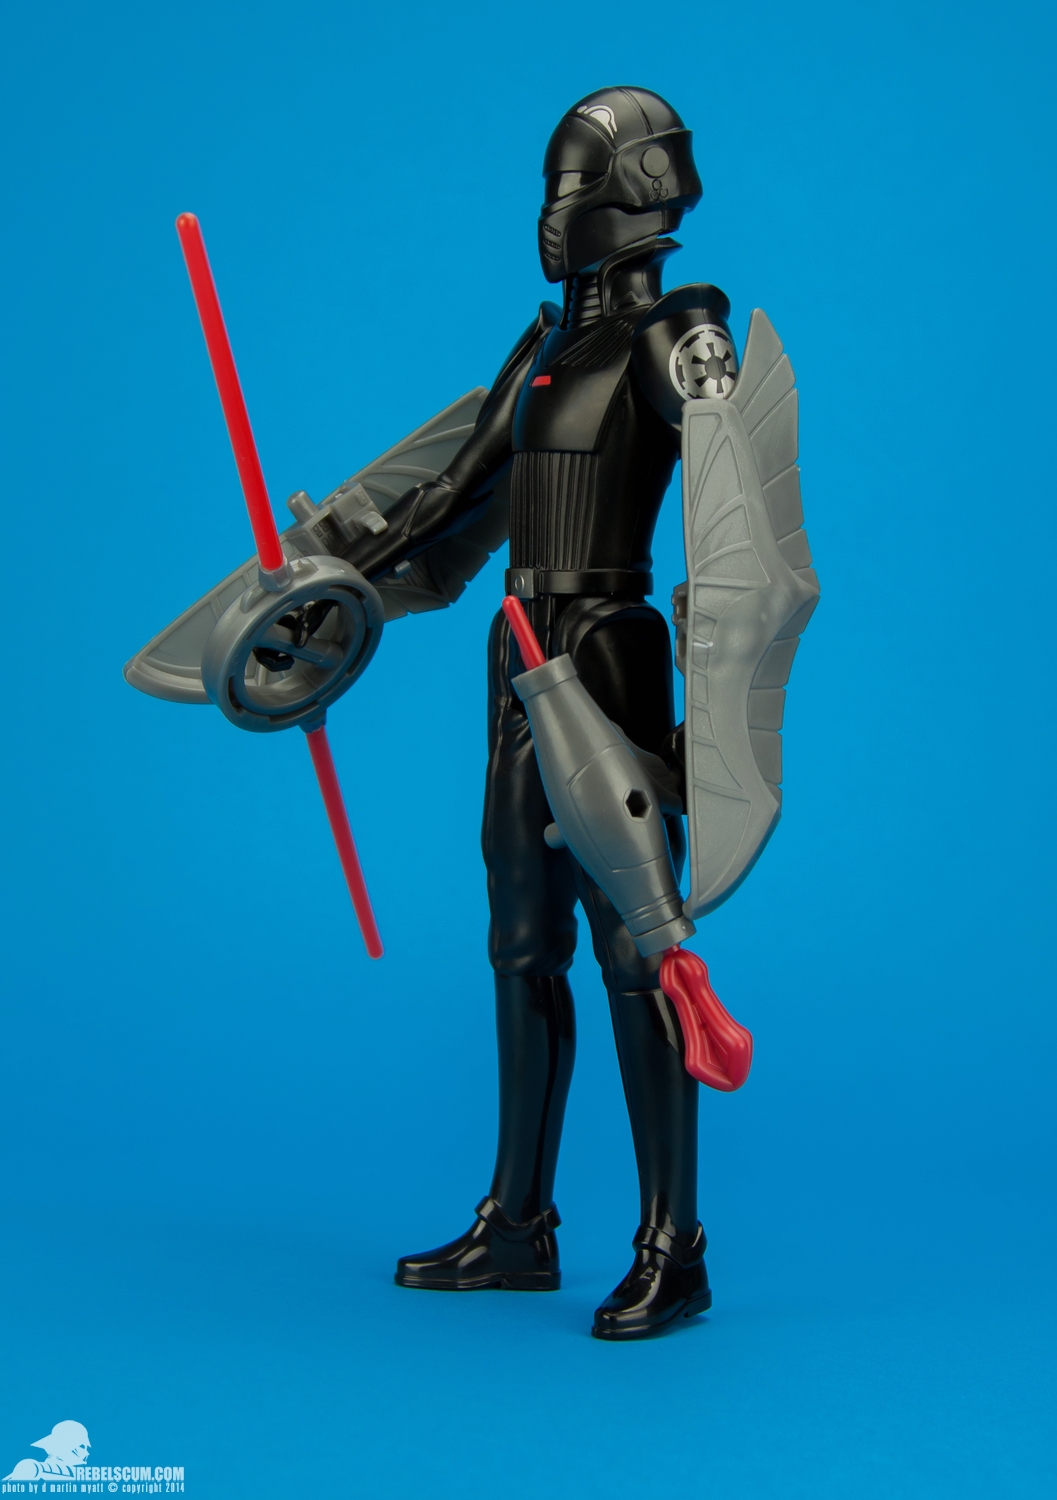 The-Inquisitor-Star-Wars-Rebels-Hero-Series-Figure-011.jpg